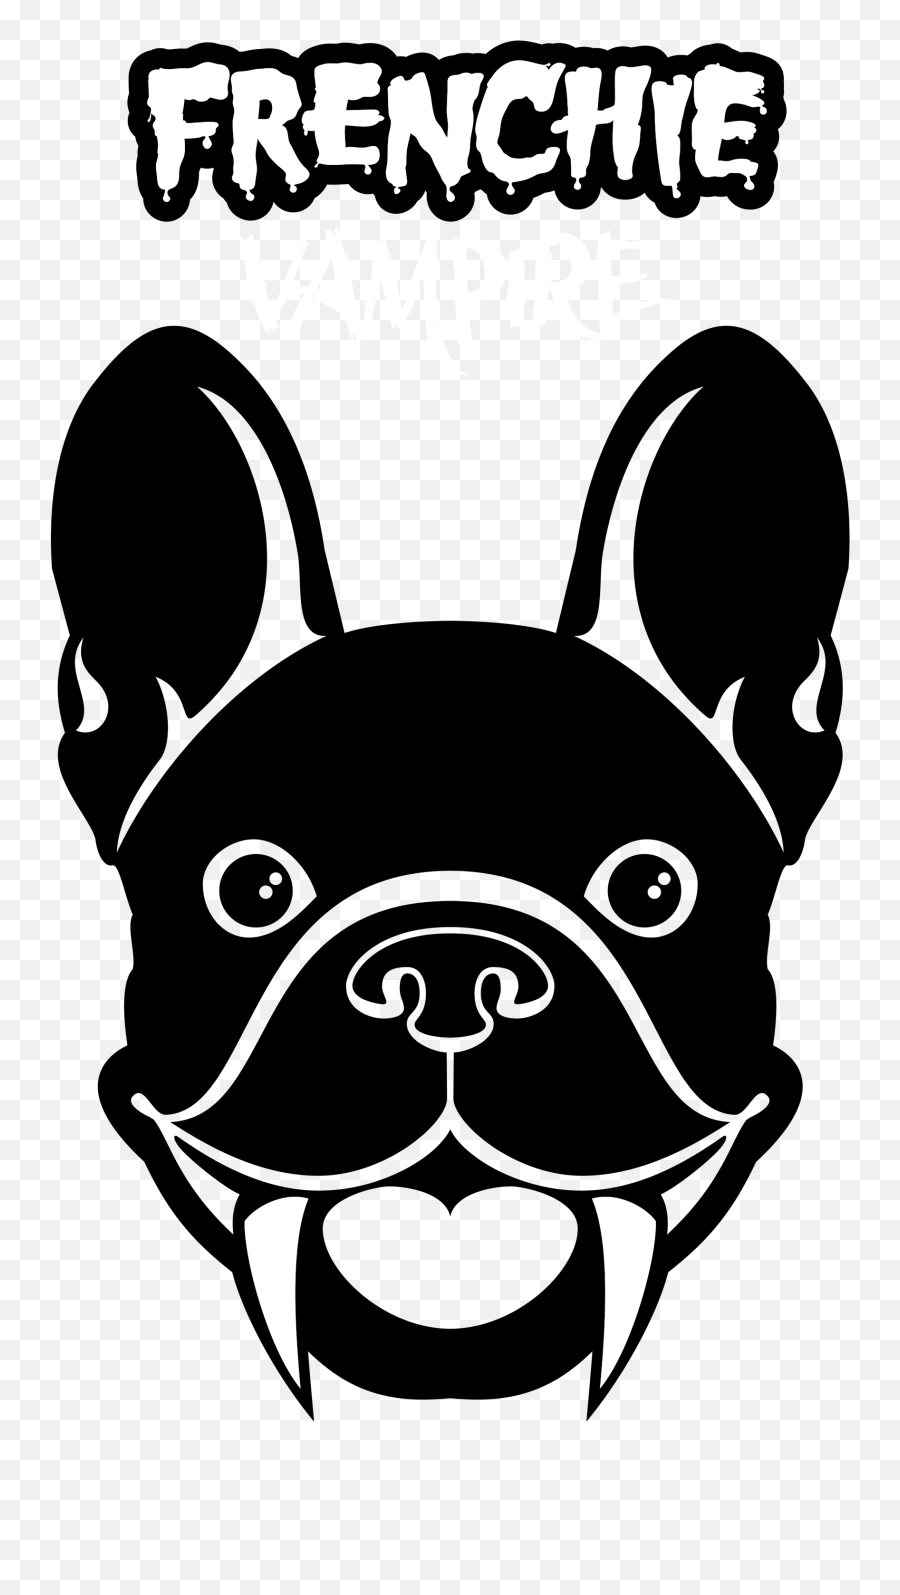 French Bulldog Png - French Bulldog,Bulldog Png